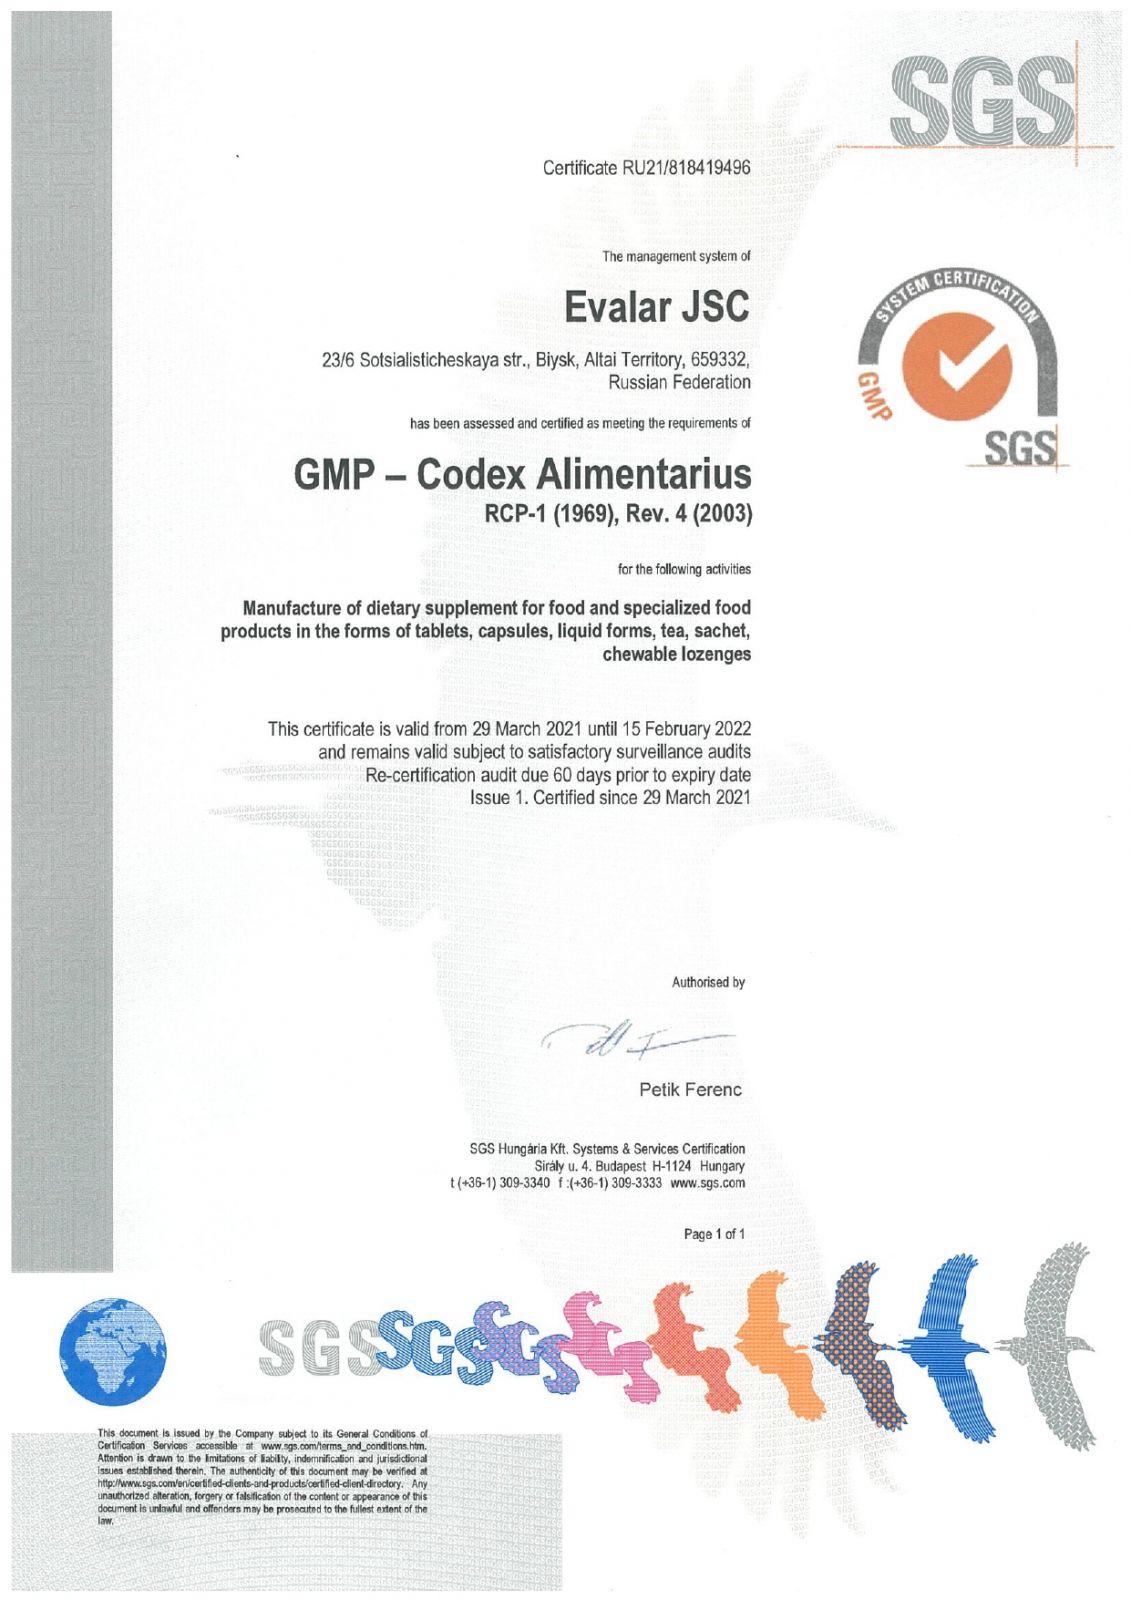 Сертификат GMP-Codex Alimentarius